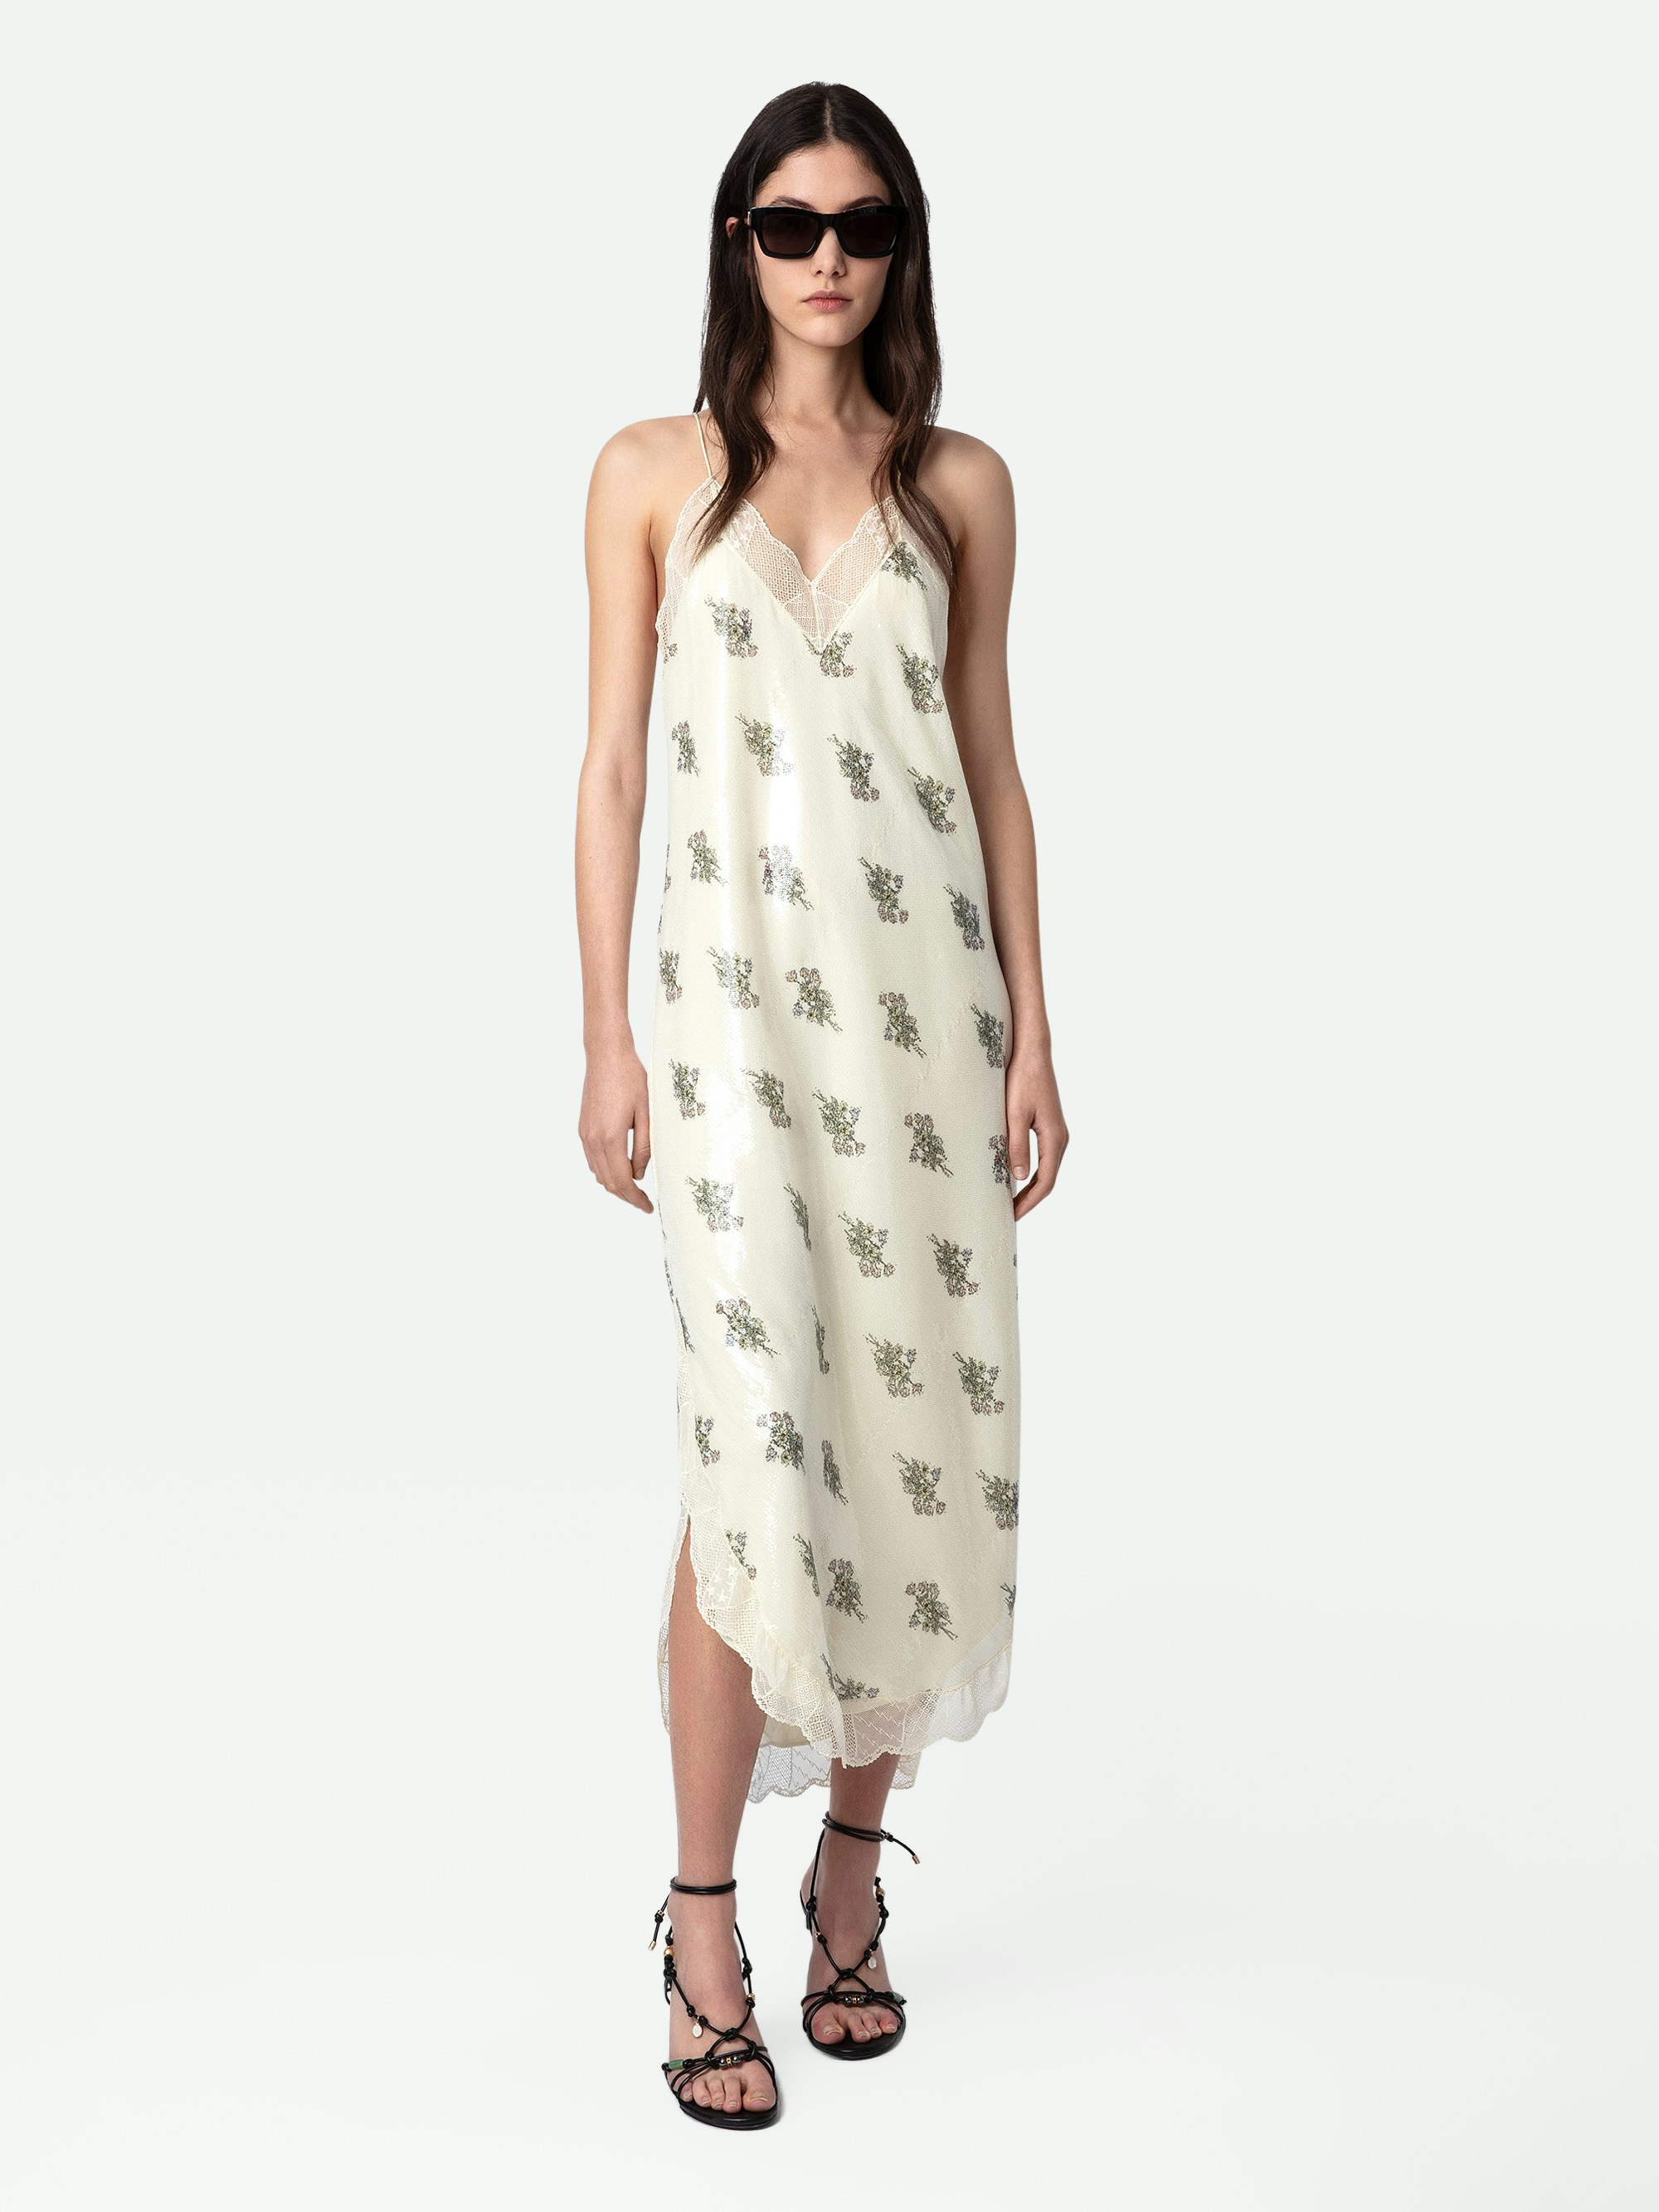 Robe Ristyl Sequins - Robe longue esprit lingerie écrue à imprimé fleuri, sequins, bretelles et bords en dentelle.